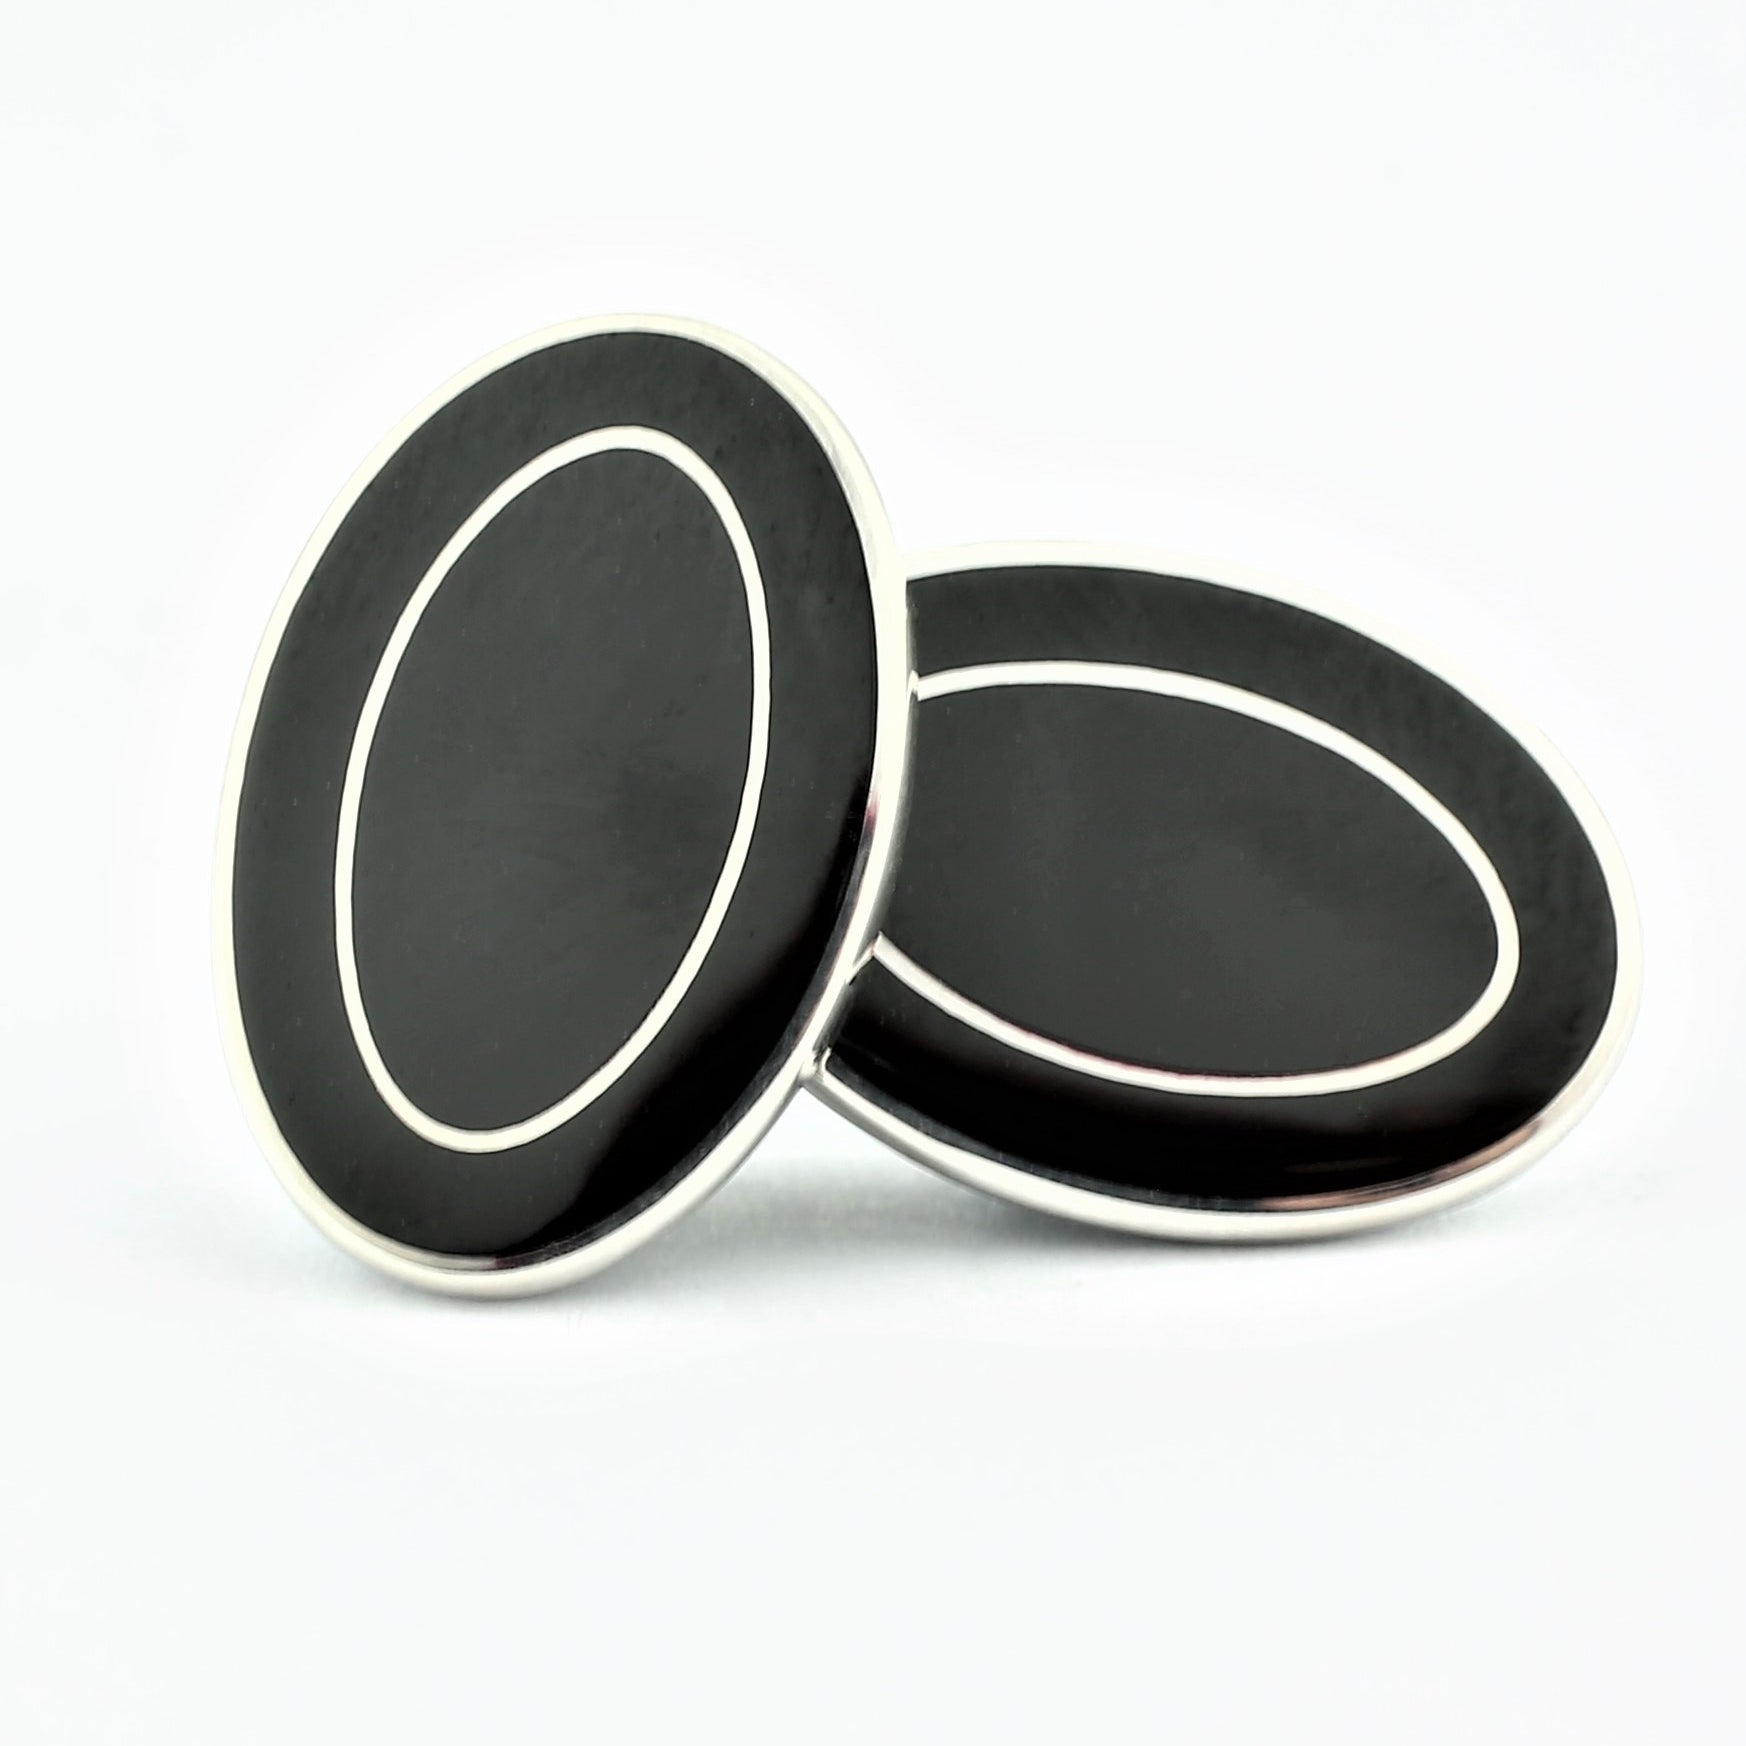 Double oval Black/Black cufflinks in silver 